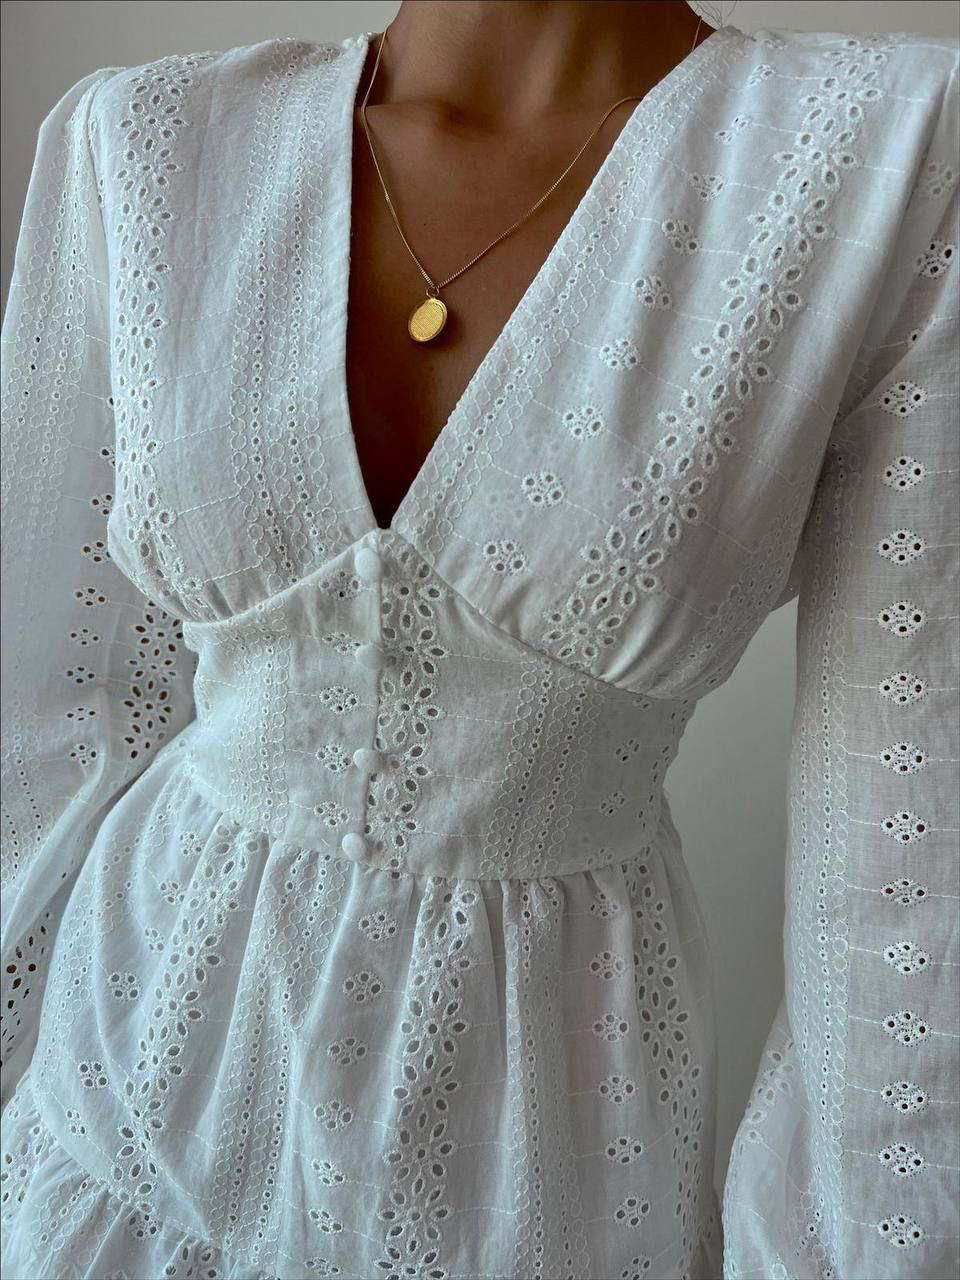 Дамска рокля CARITE WHITE  https://bvseductive.com/products/womans-s-dresses-carite-white  моделът е с V-образно деколте и красив акцент от буфан ръкави - комбинация, която ще провокира вниманието на околните дължината се разкроява и оптически ще ....